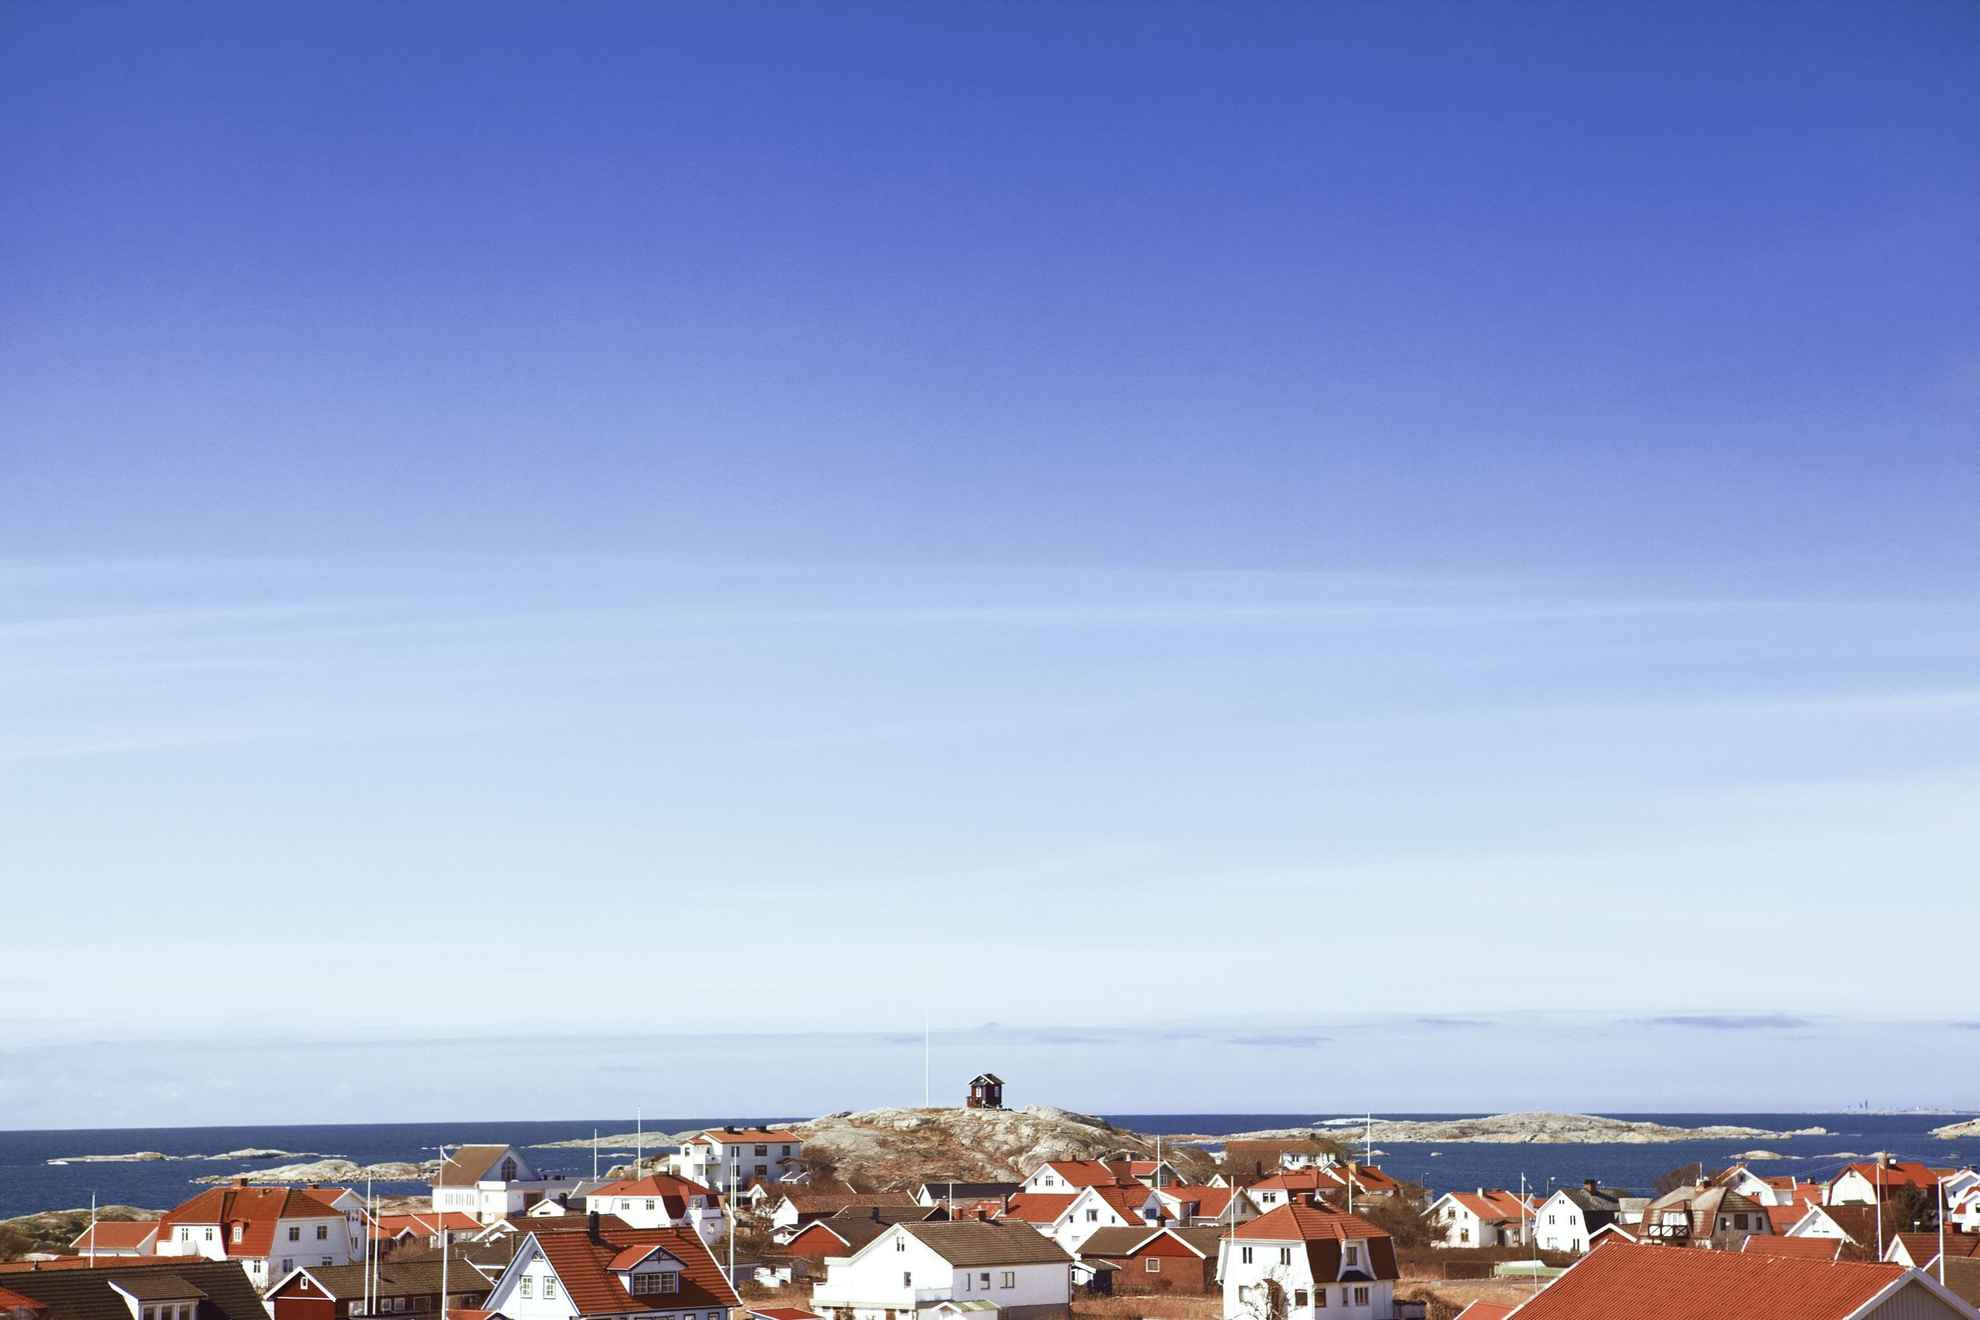 Vue en hauteur de l'île de Vrångö avec en bas de la photo les maisons de l'île et le ciel bleu au dessus.